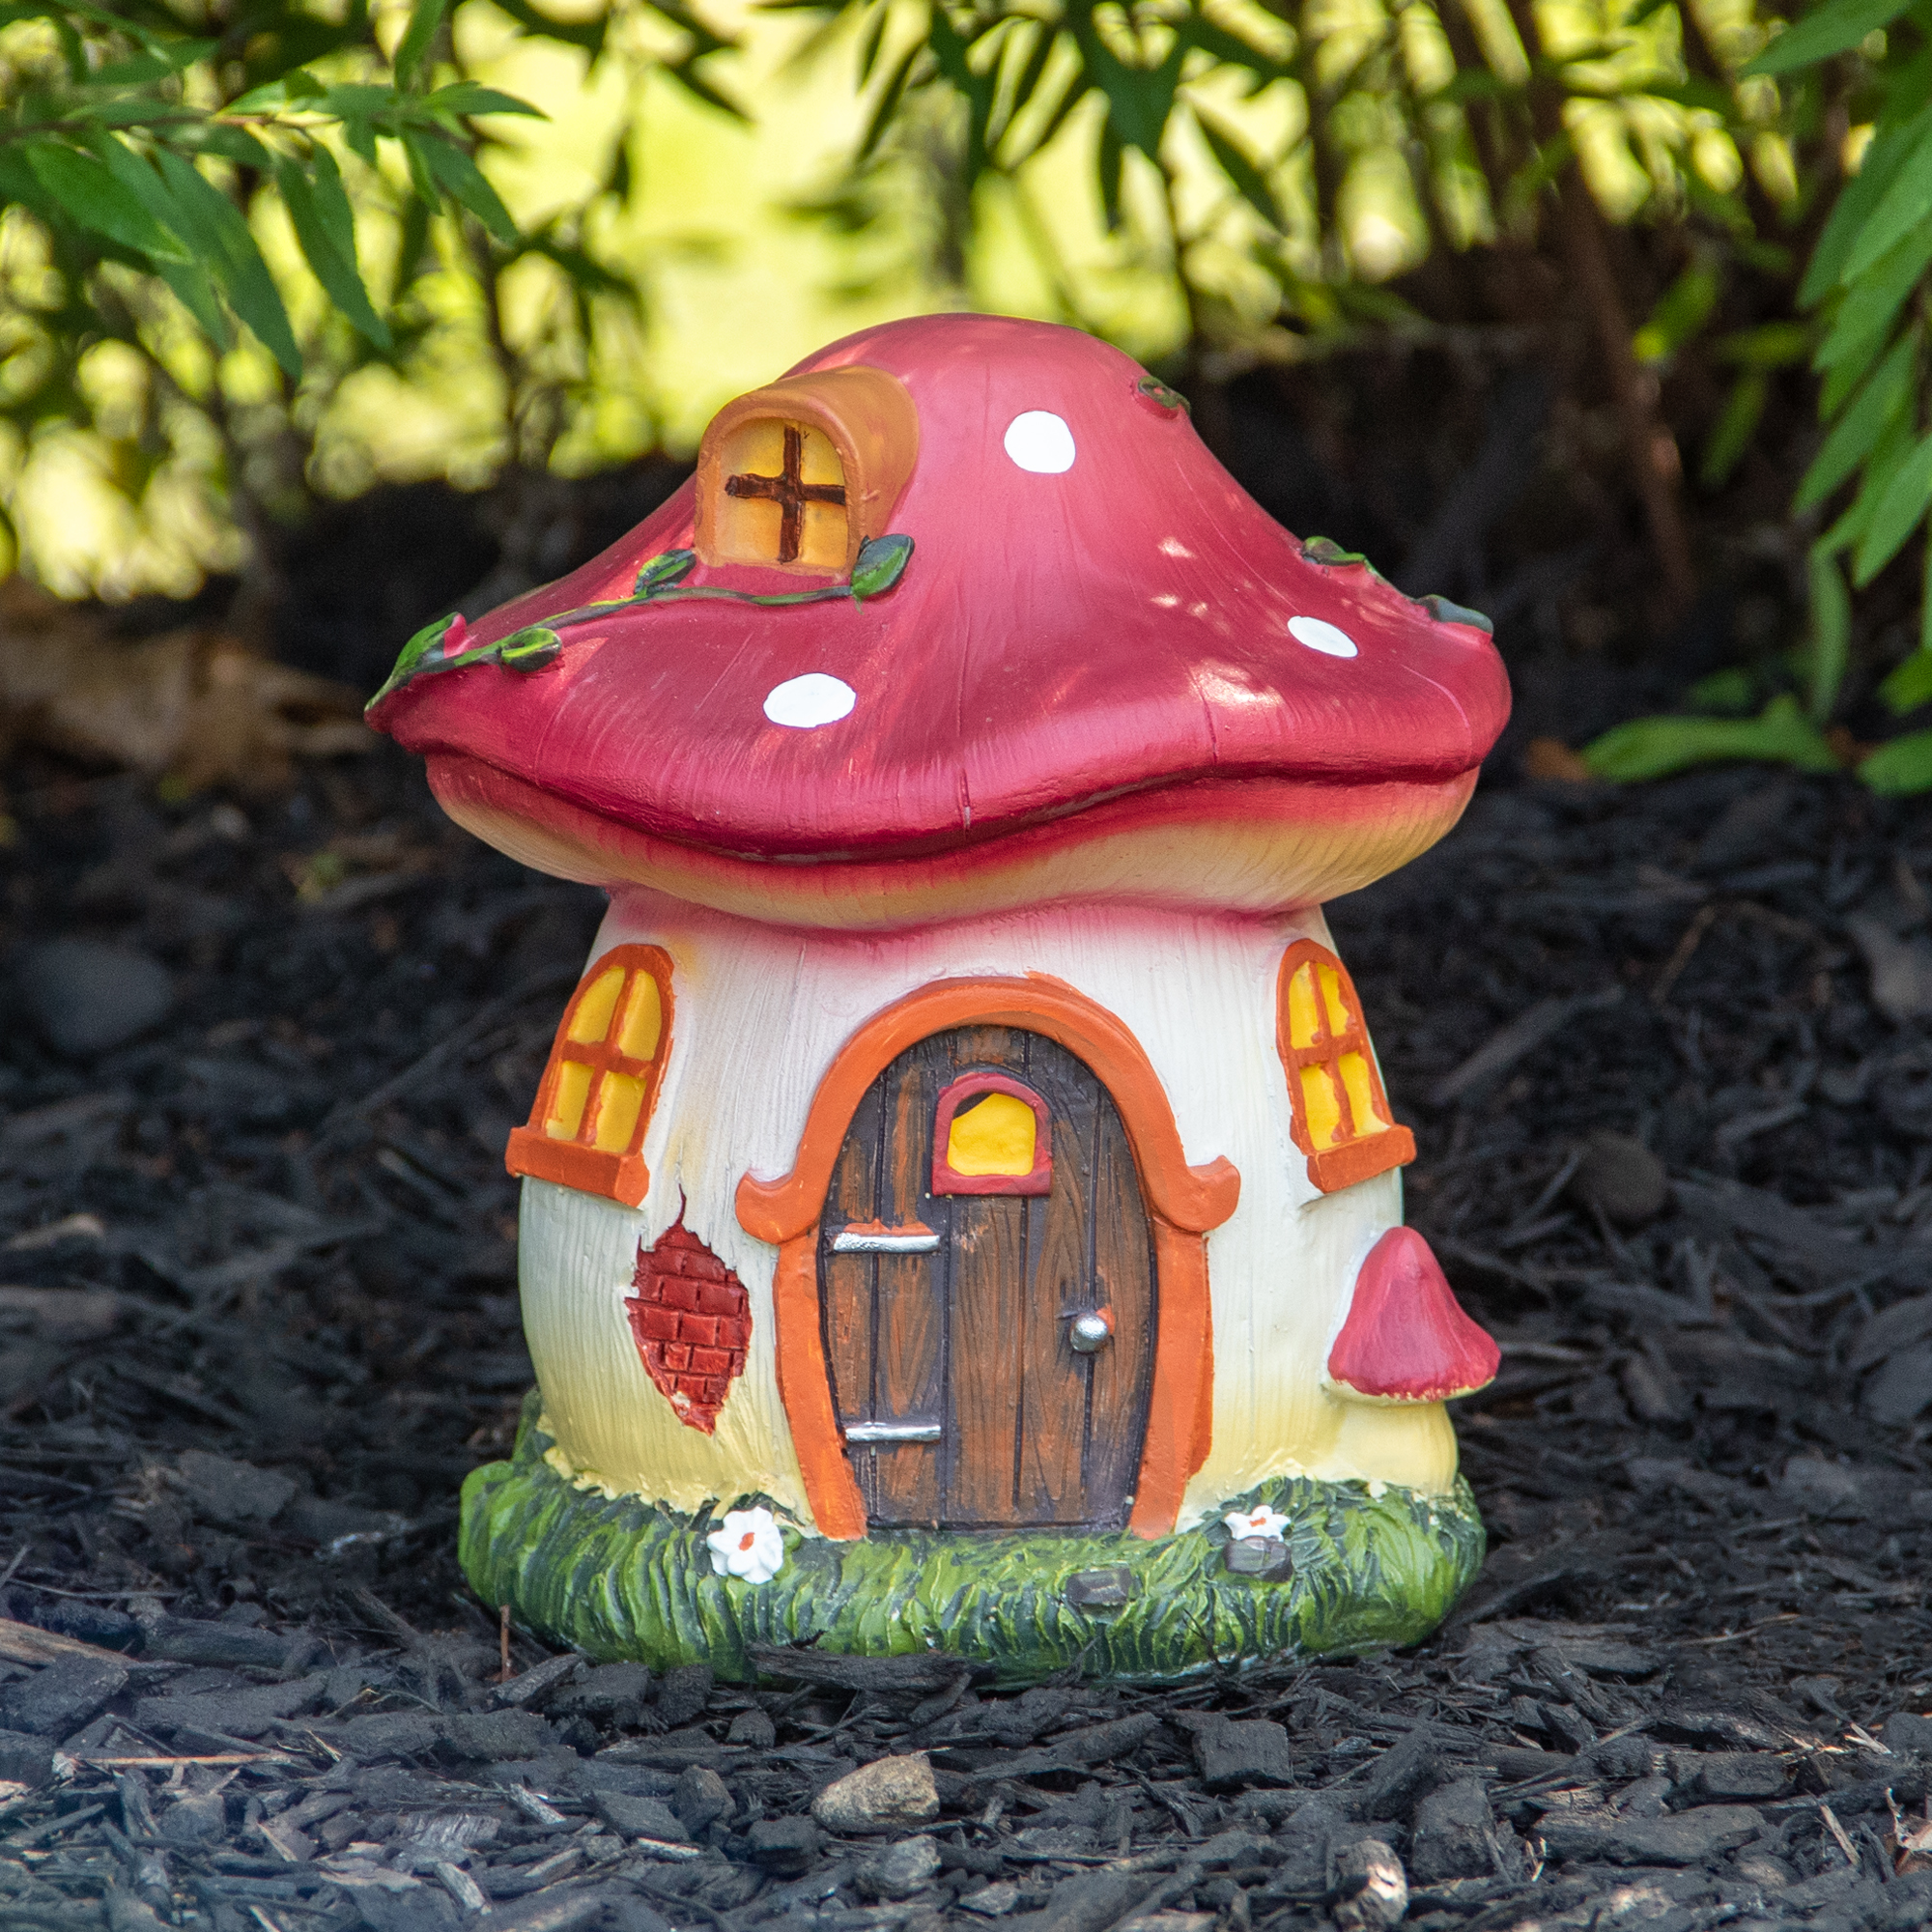 Northlight 6.25" Red Mushroom House Outdoor Garden Statue